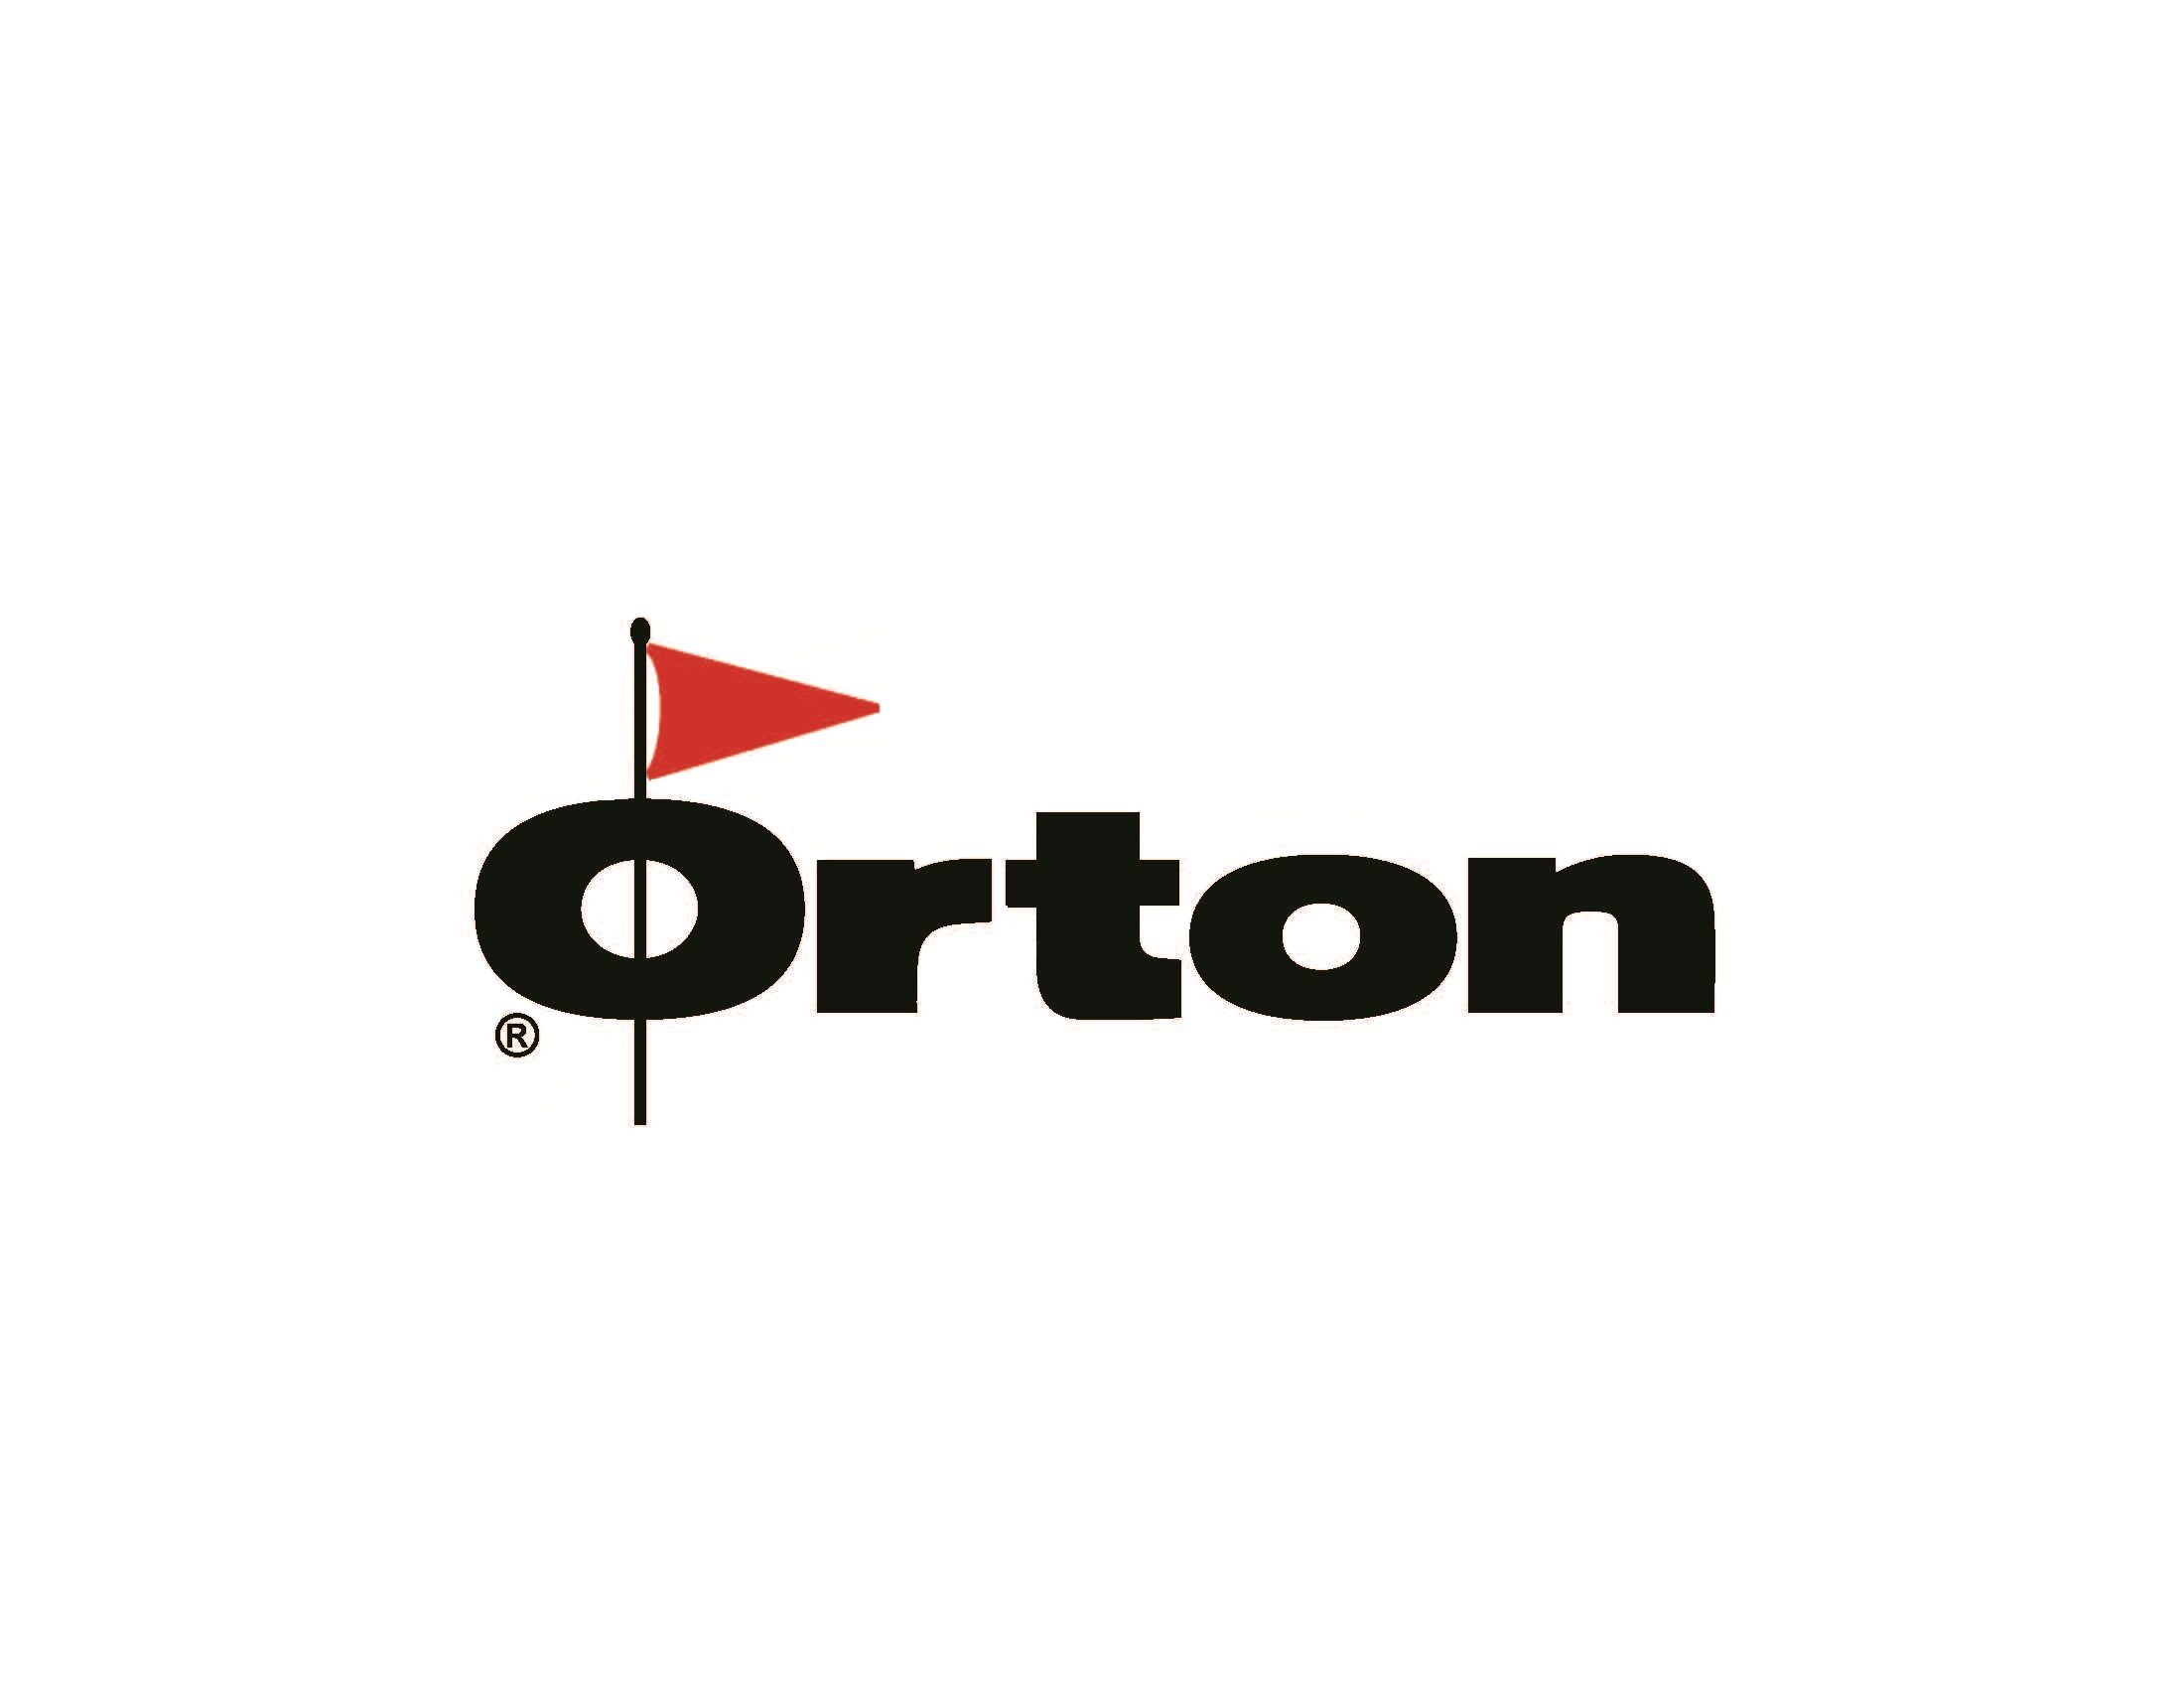 orton 2015 logo